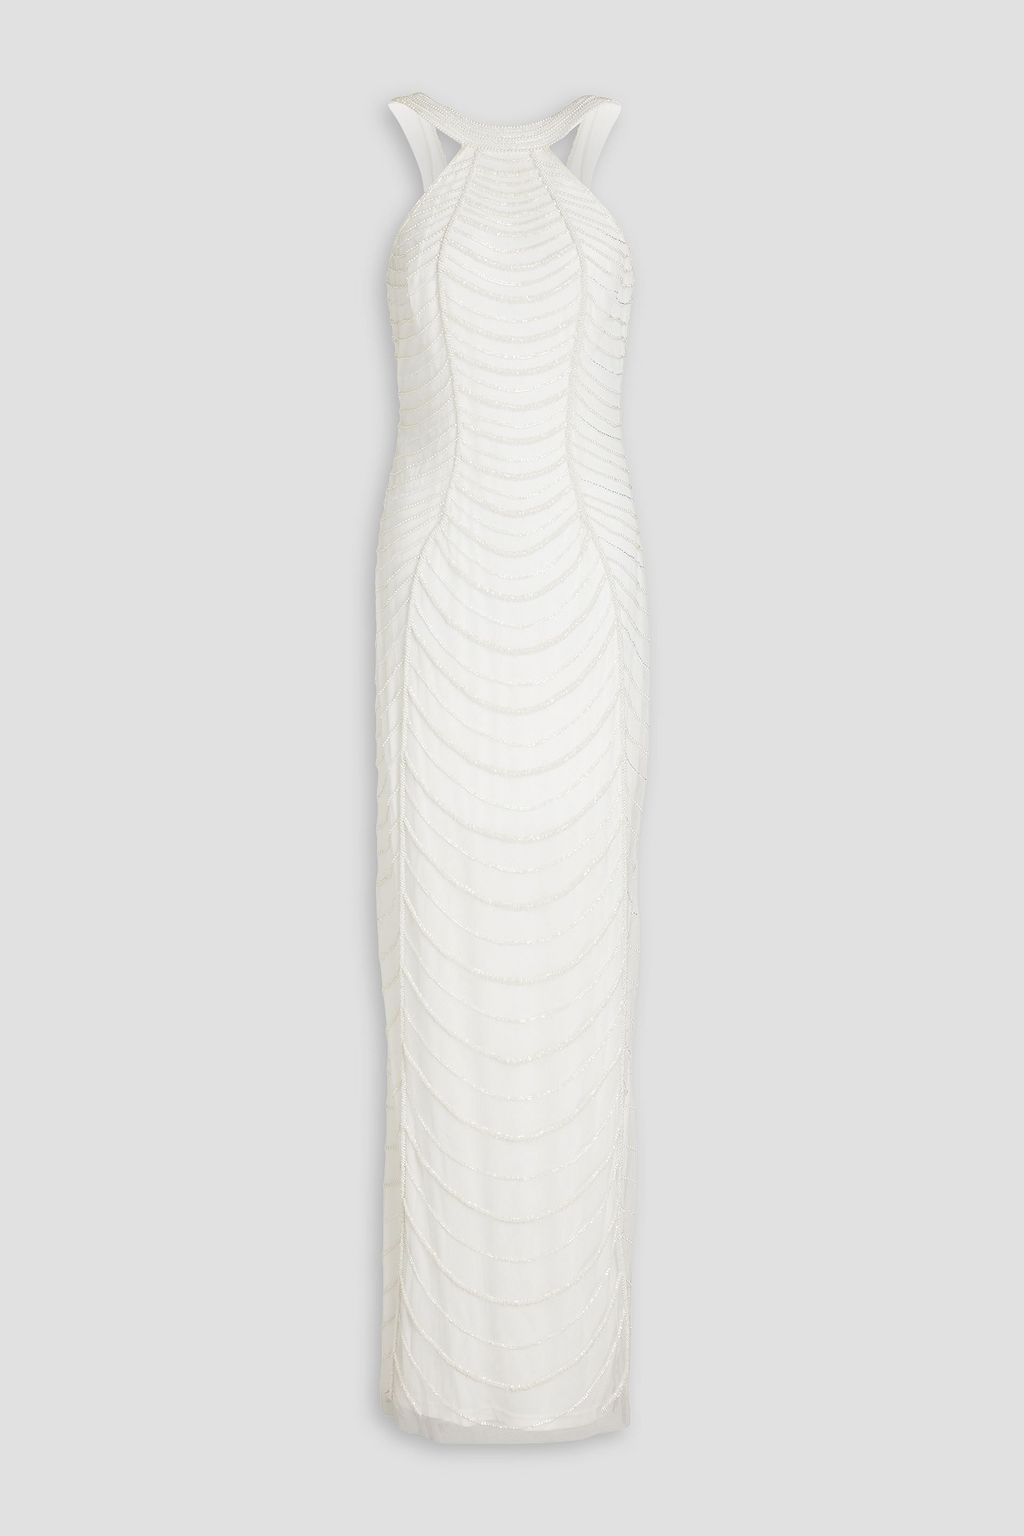 Платье из тюля, украшенное бисером AIDAN MATTOX, белый